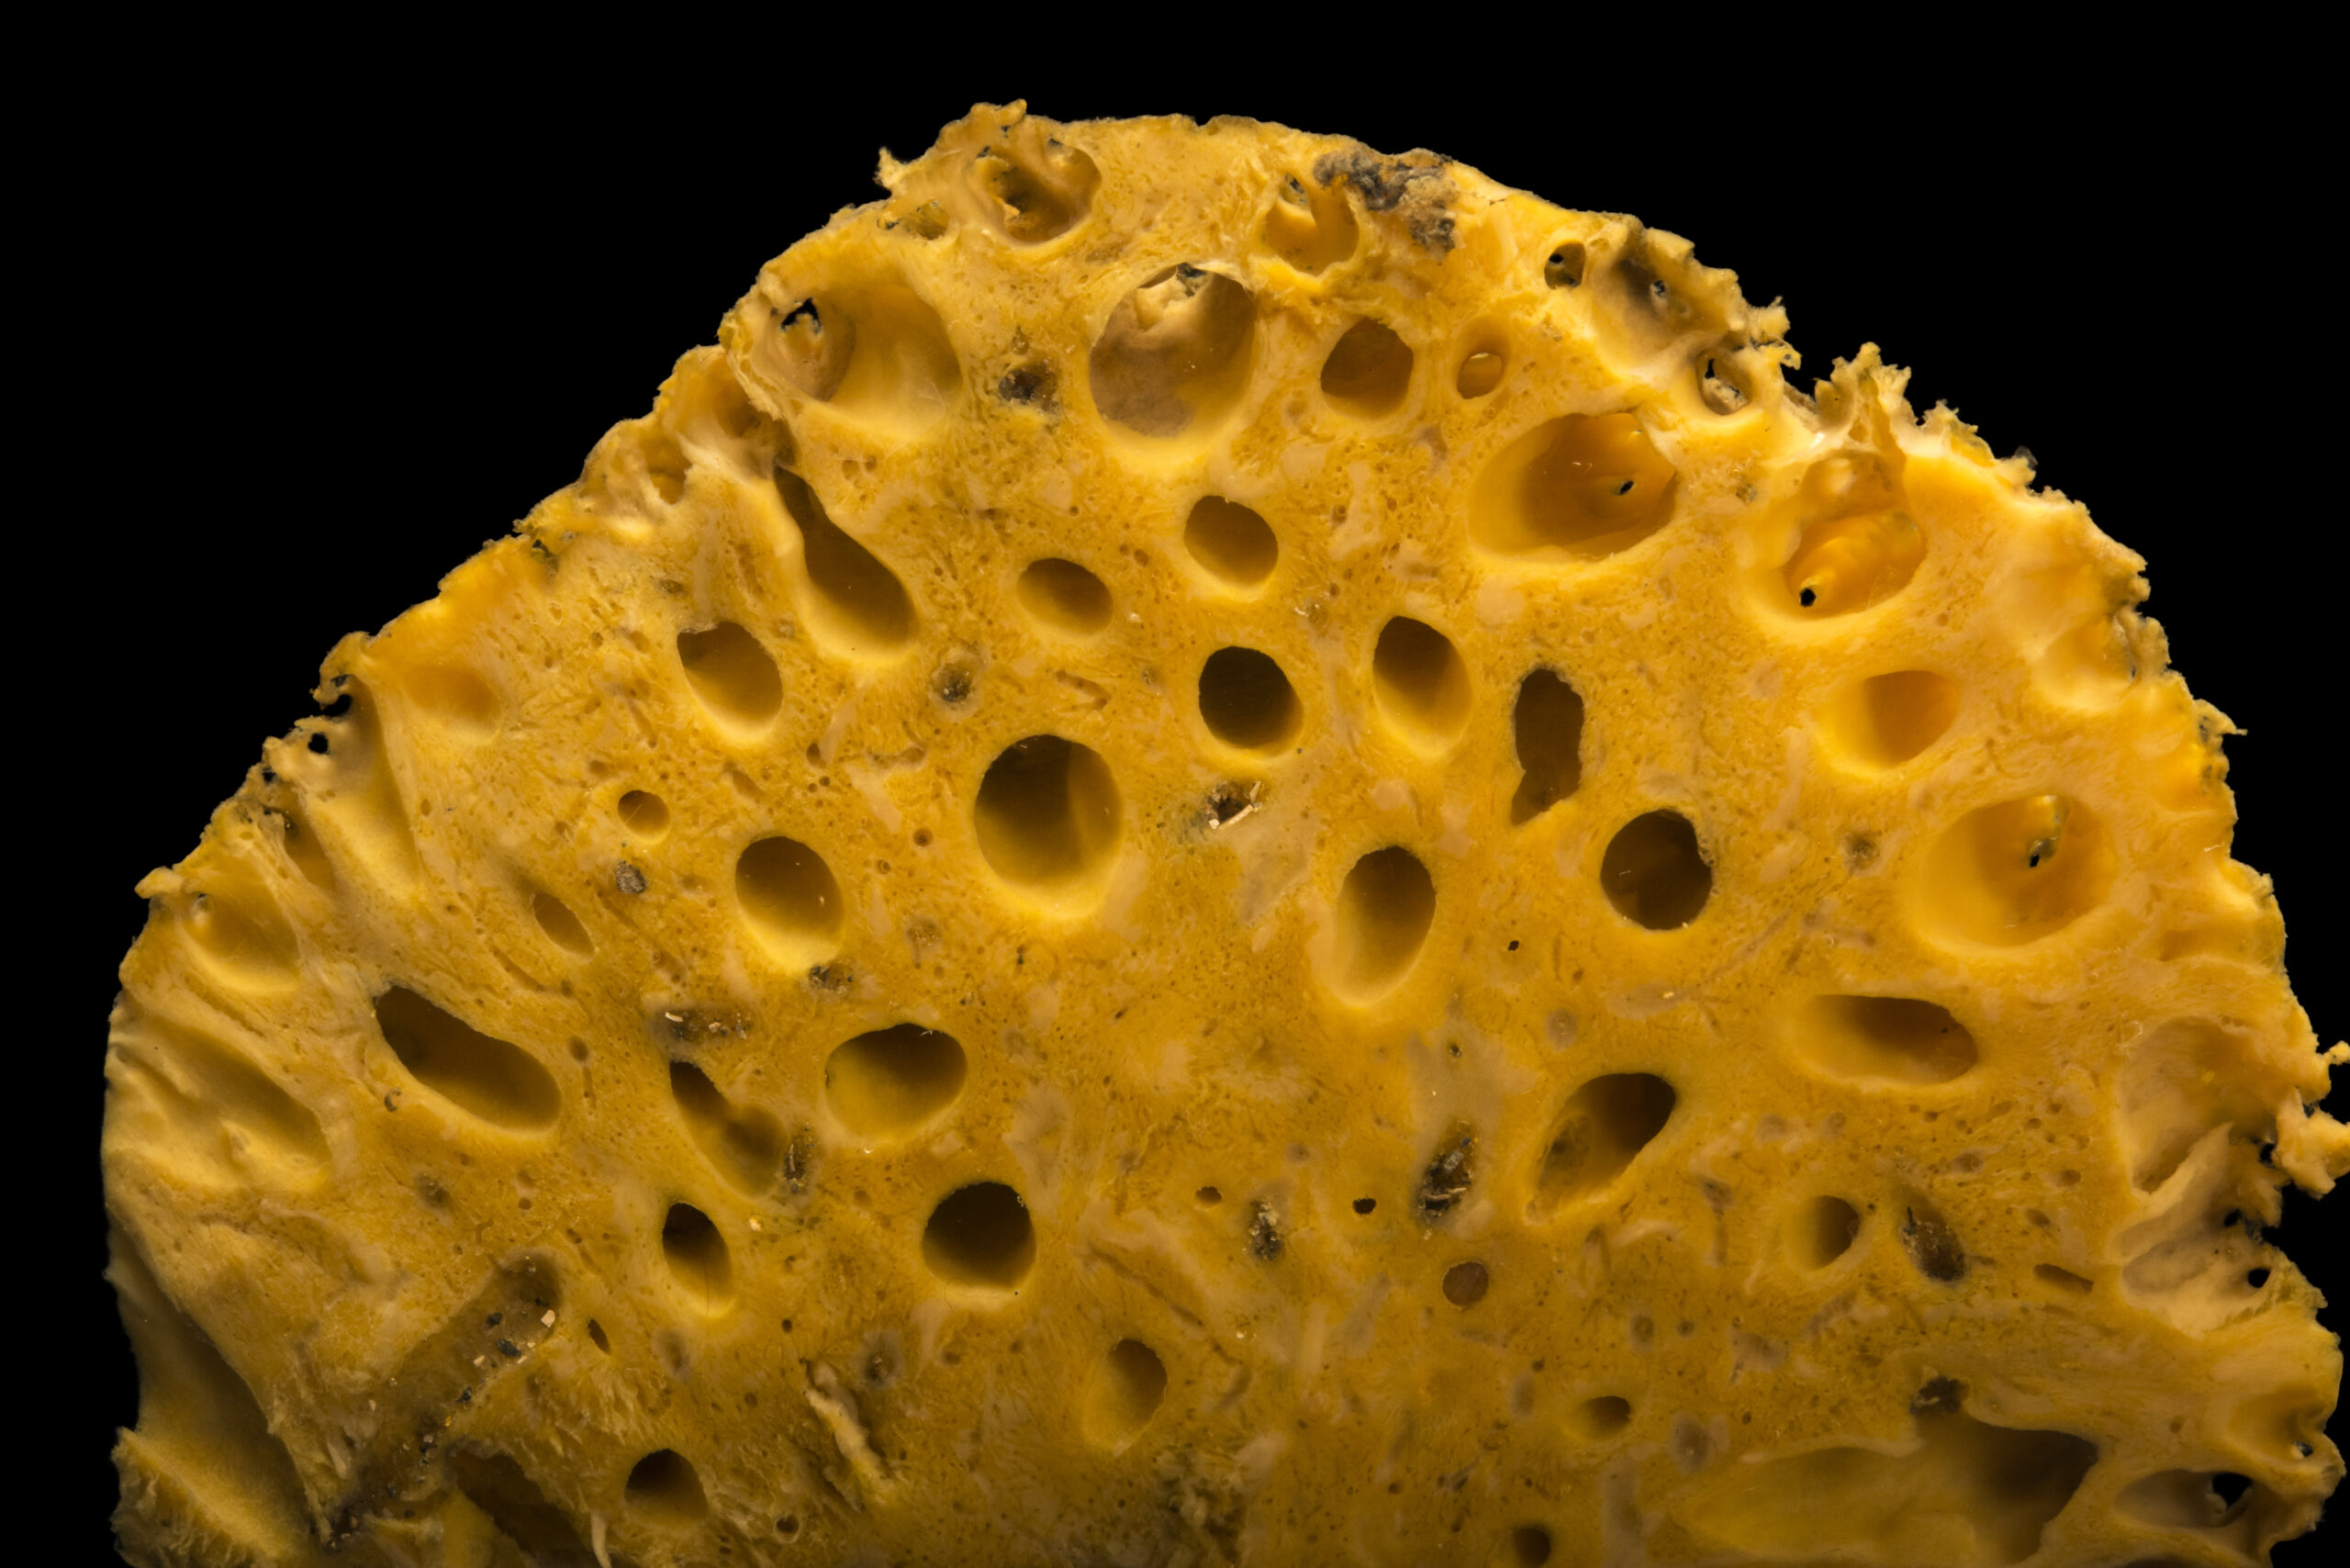 Loggerhead Sponge (Spheciospongia vesparium) with sponge snapping shrimp (Synalpheus sp) at Gulf Specimen Marine Lab and Aquarium.